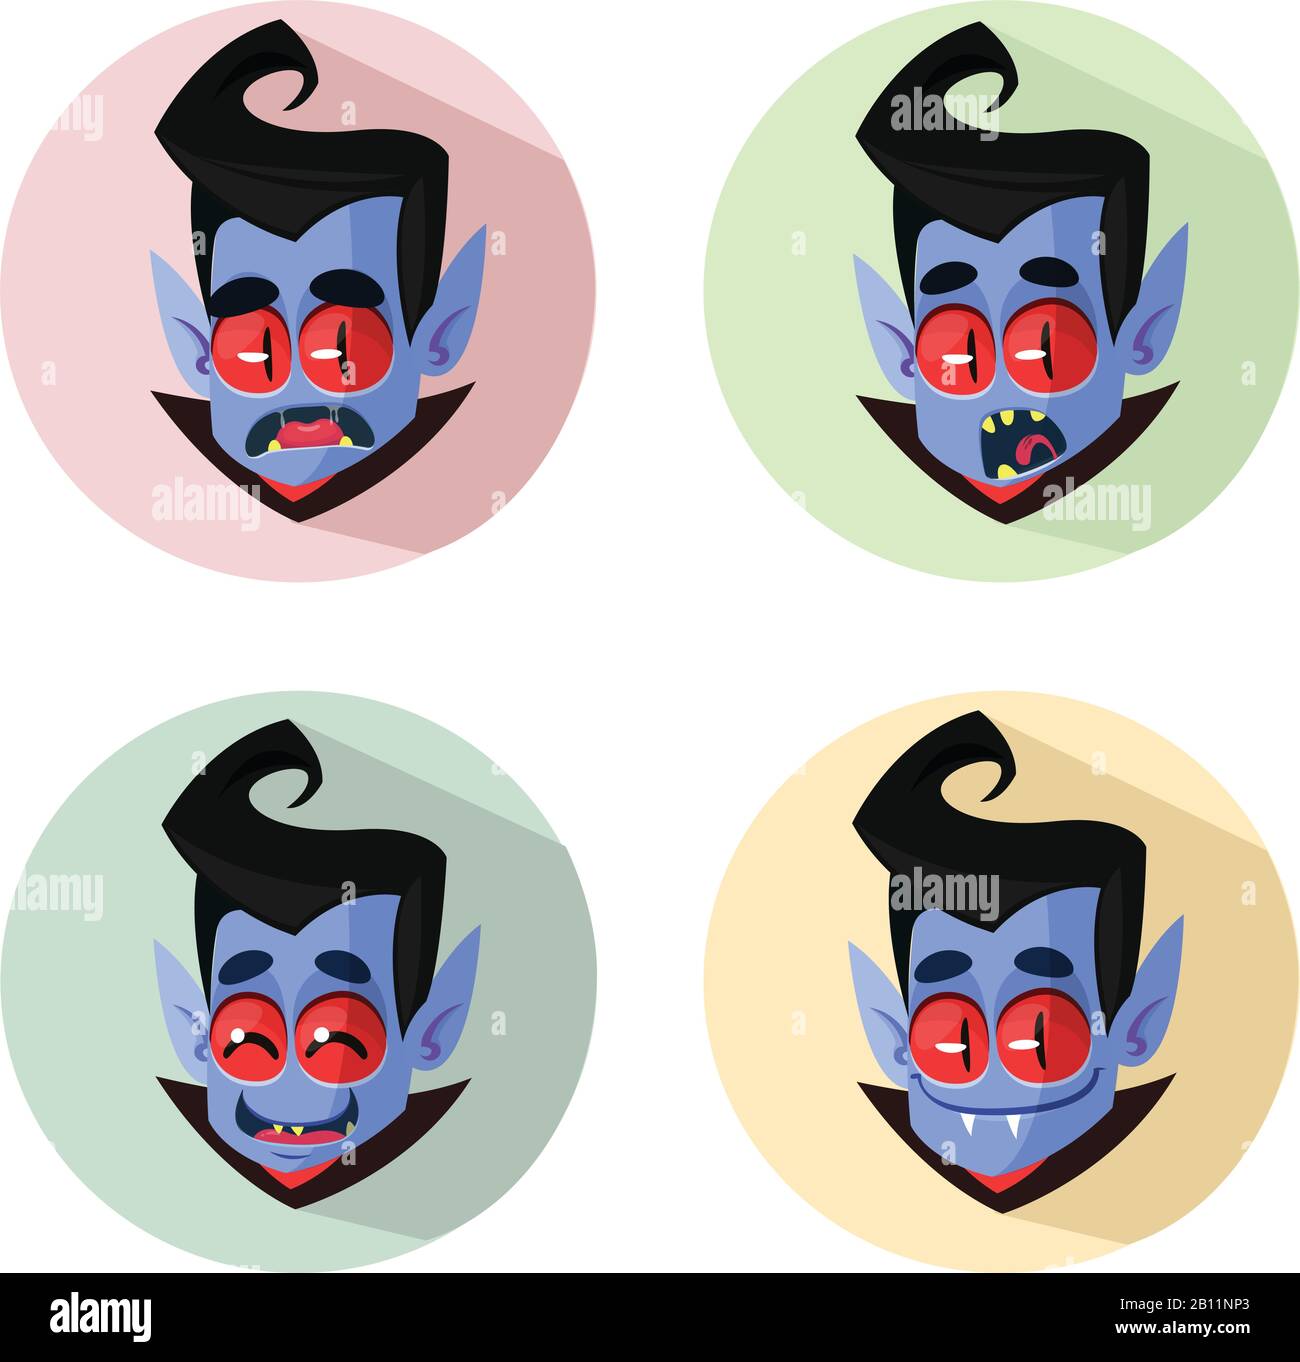 Cartoon vampire heads icons. Vector illustration of vampire emotions Stock Vector